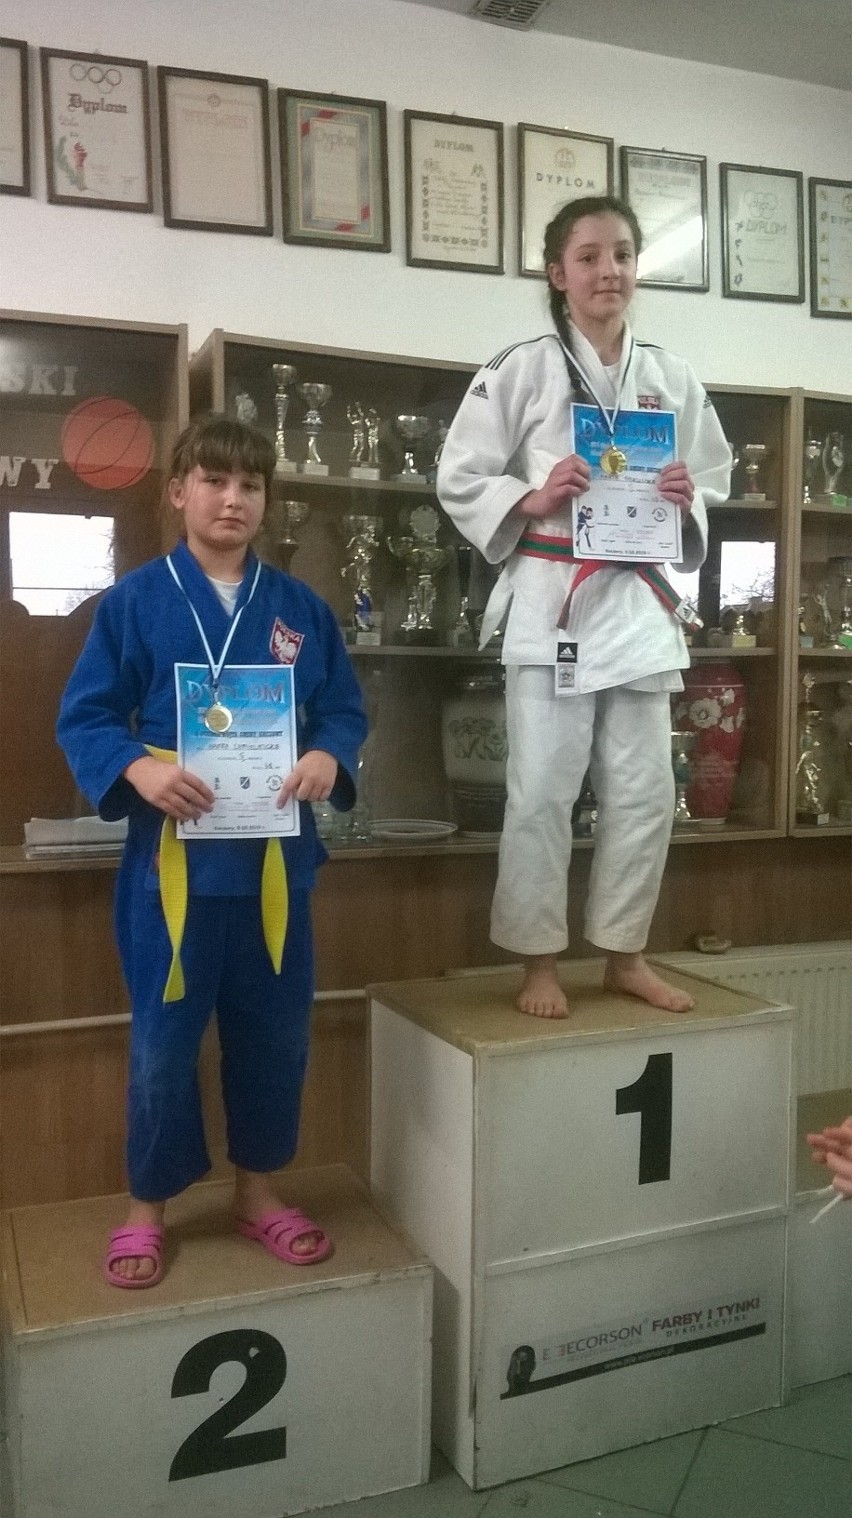 XVI Ogólnopolski Turniej Judo. 14 medali dla TS Judo Gryf Słupsk